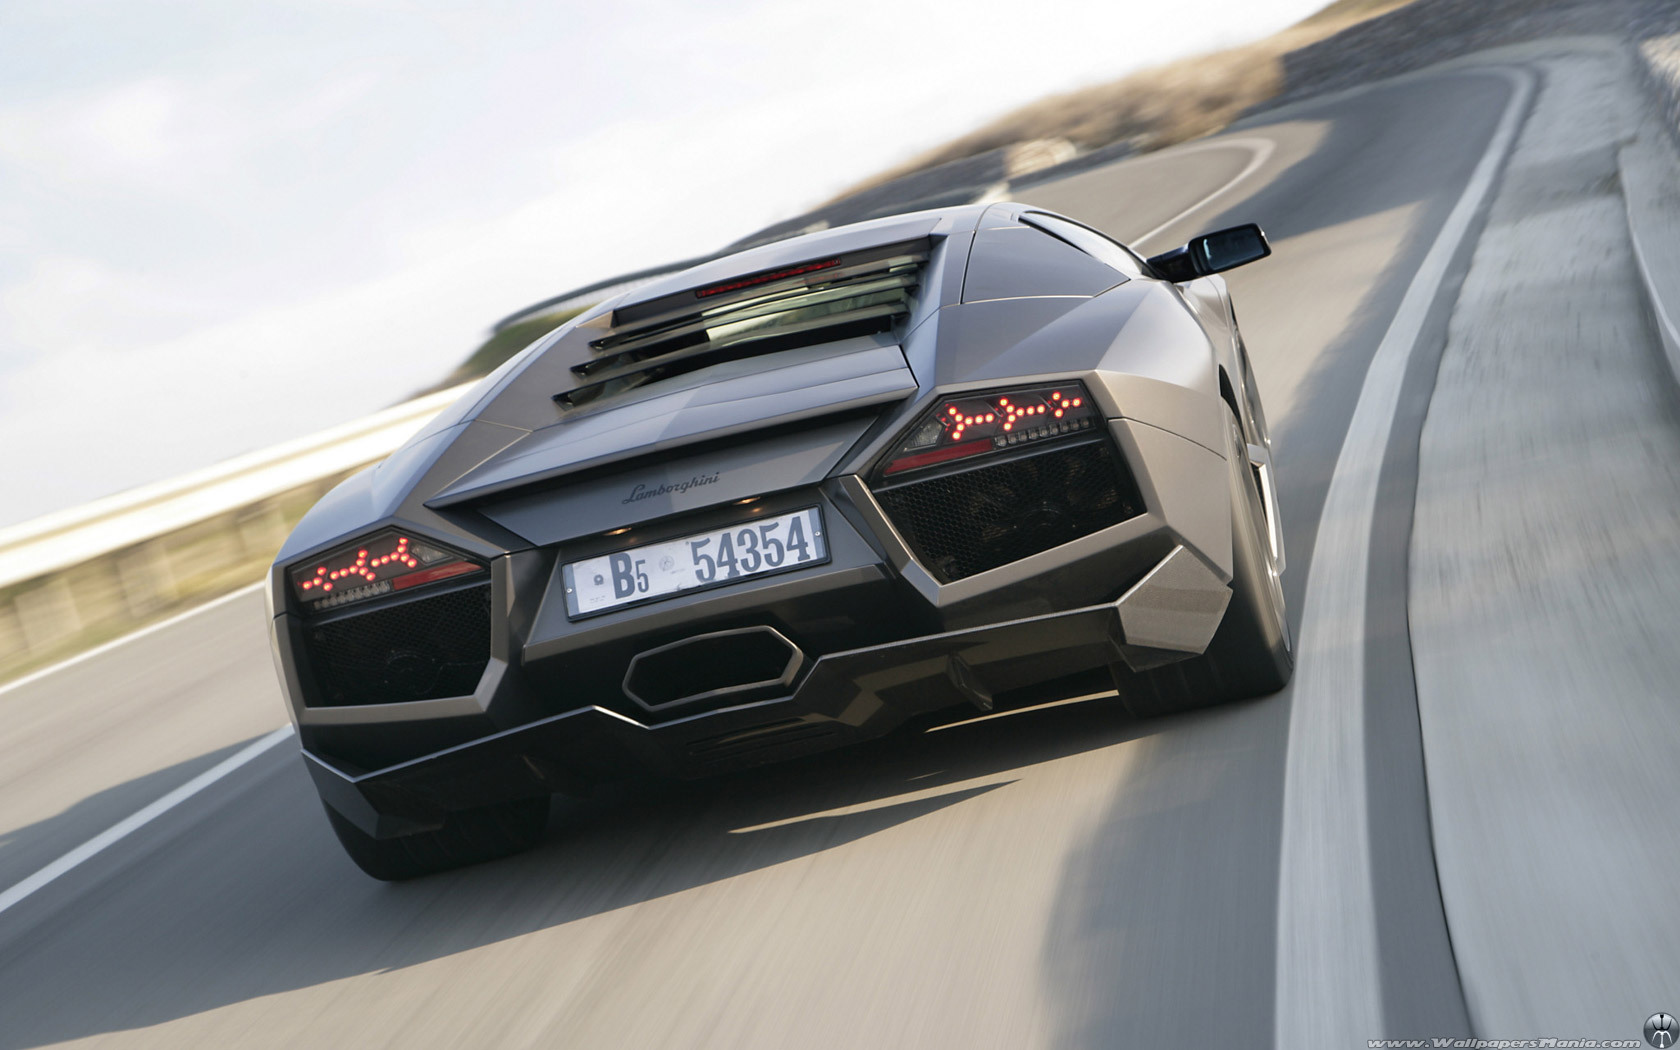 Download mobile wallpaper Transport, Roads, Auto, Lamborghini for free.